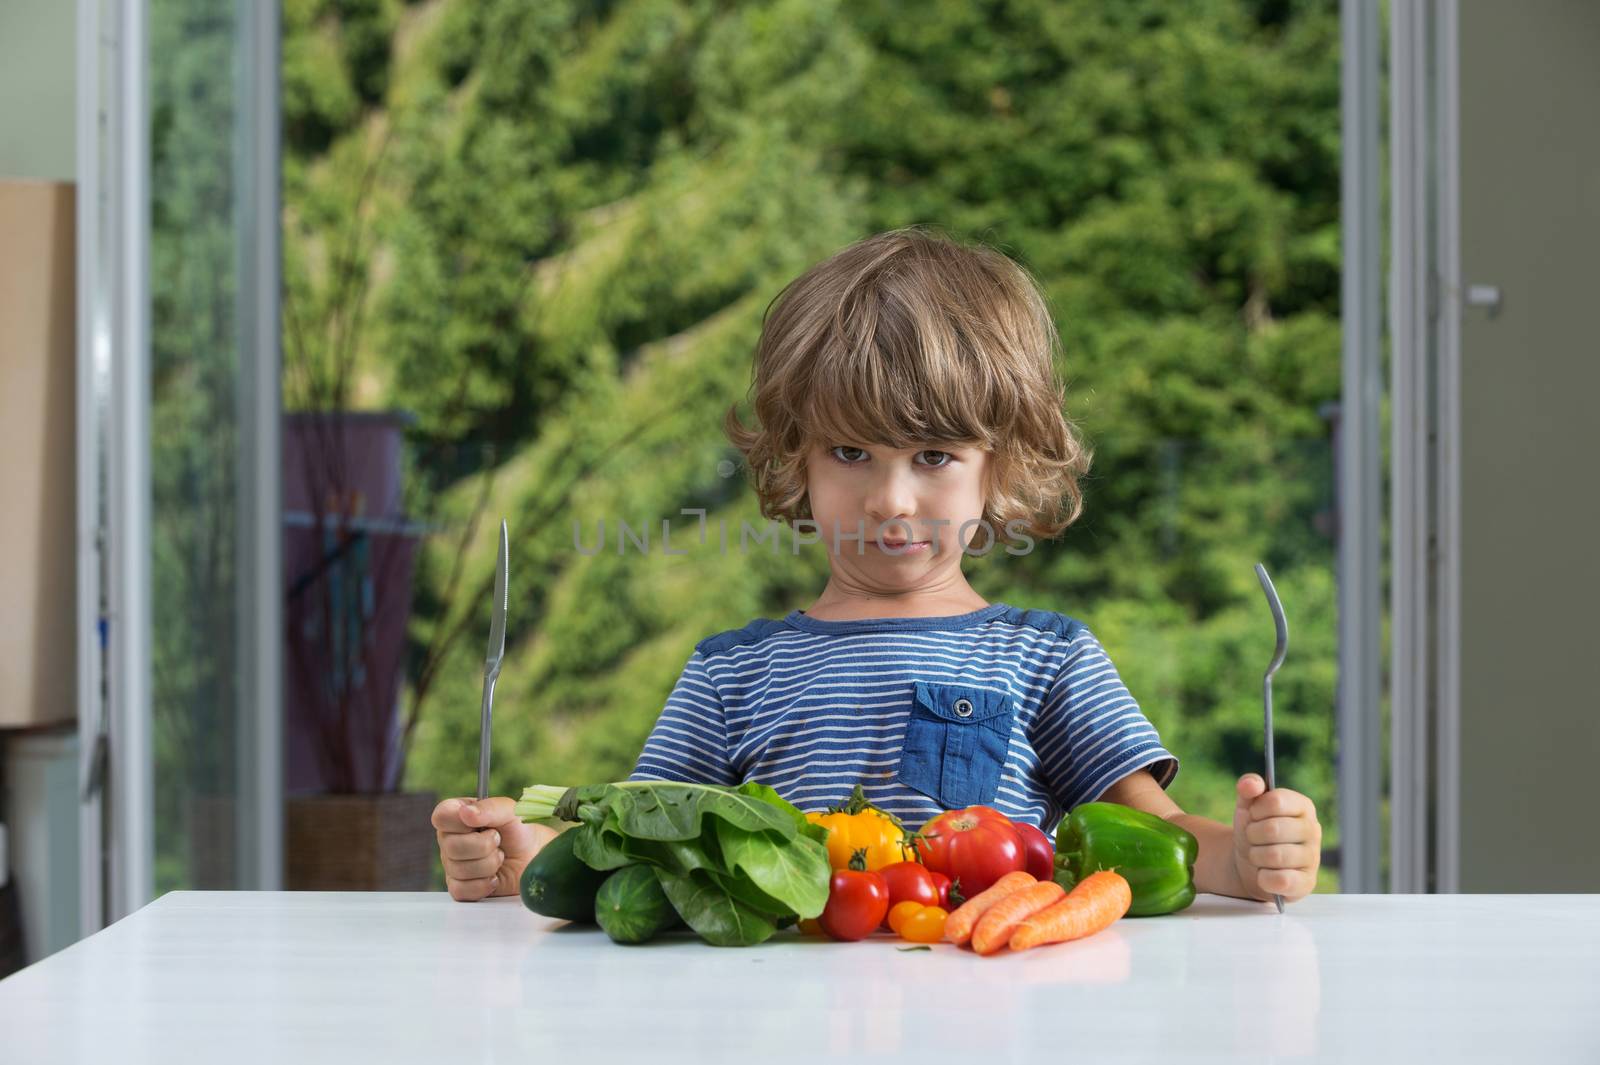 Little boy vegetable meal by kaliantye